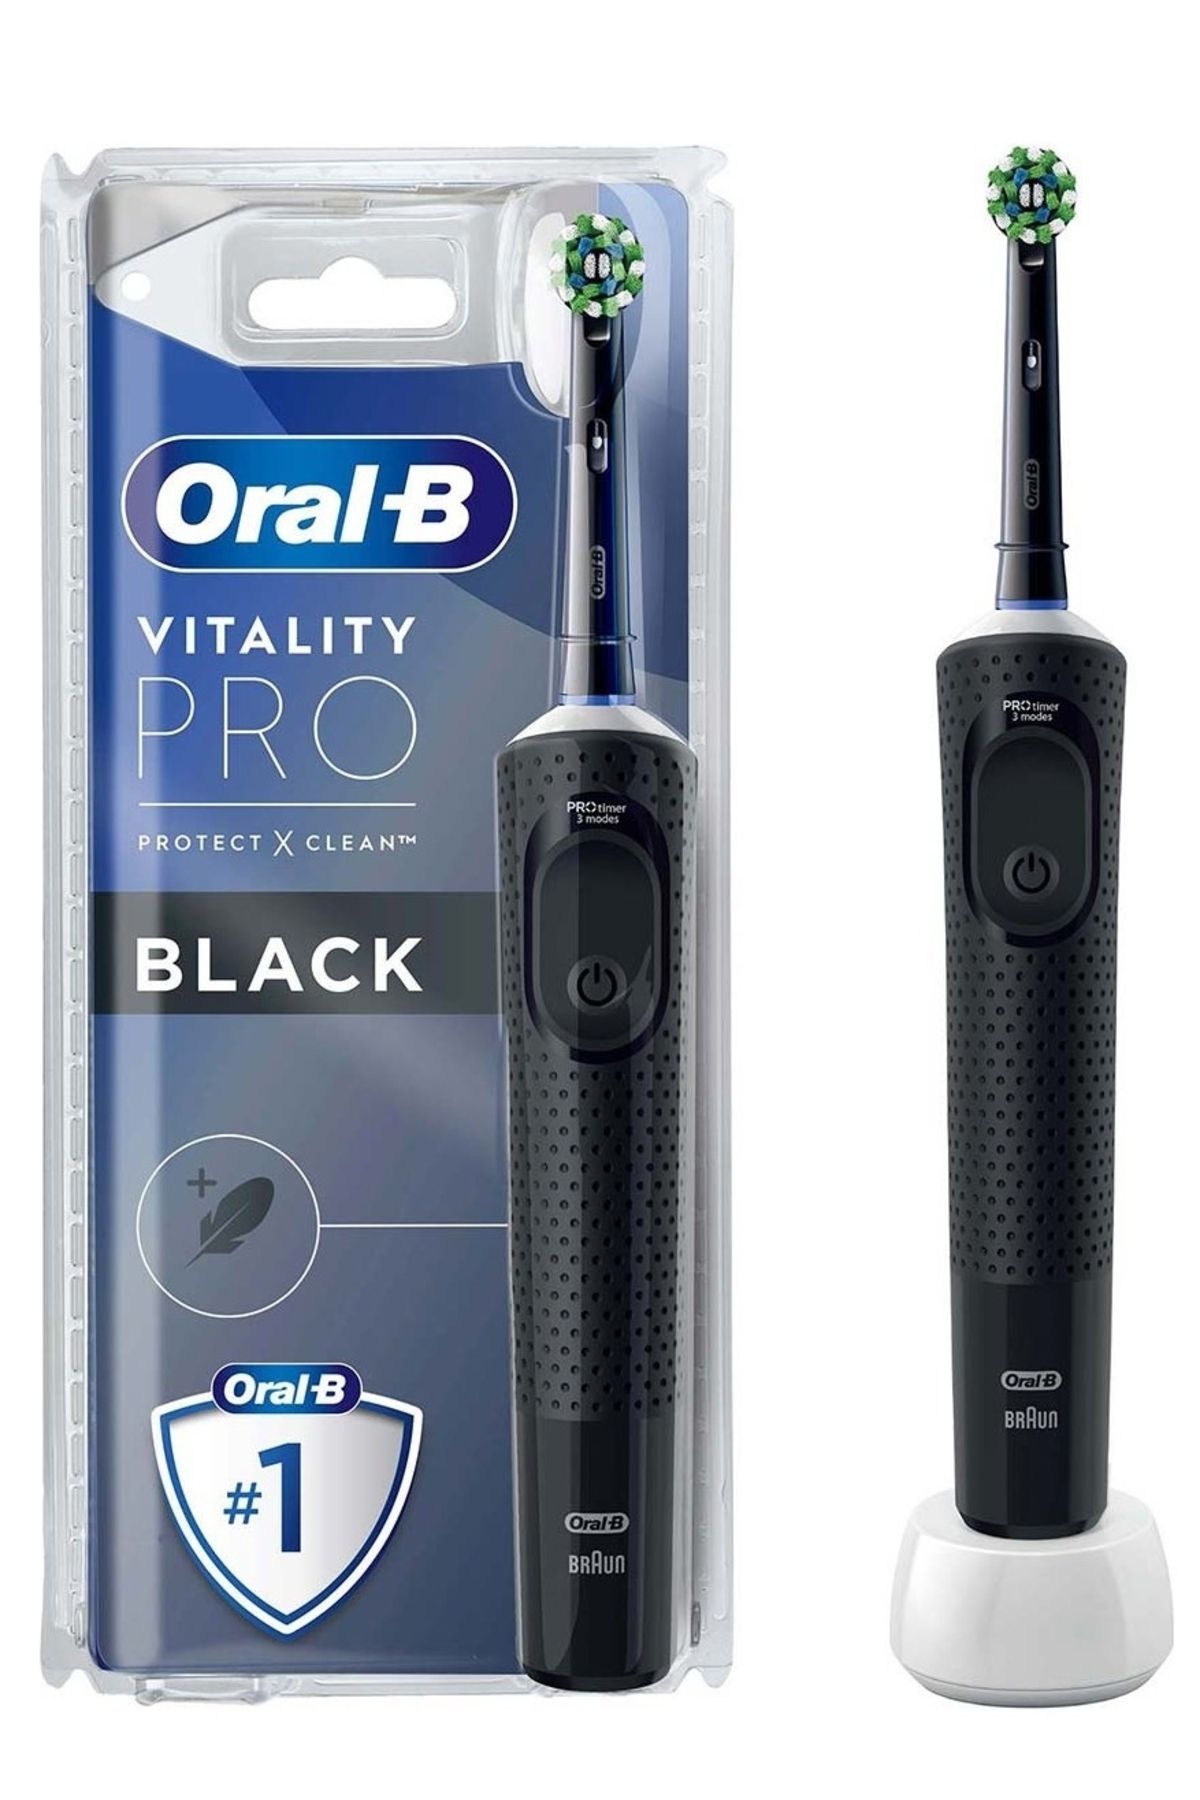 Oral-B Şarjlı/Elektrikli Diş Fırçası Vitality Pro Siyah Koruma ve Temizlik